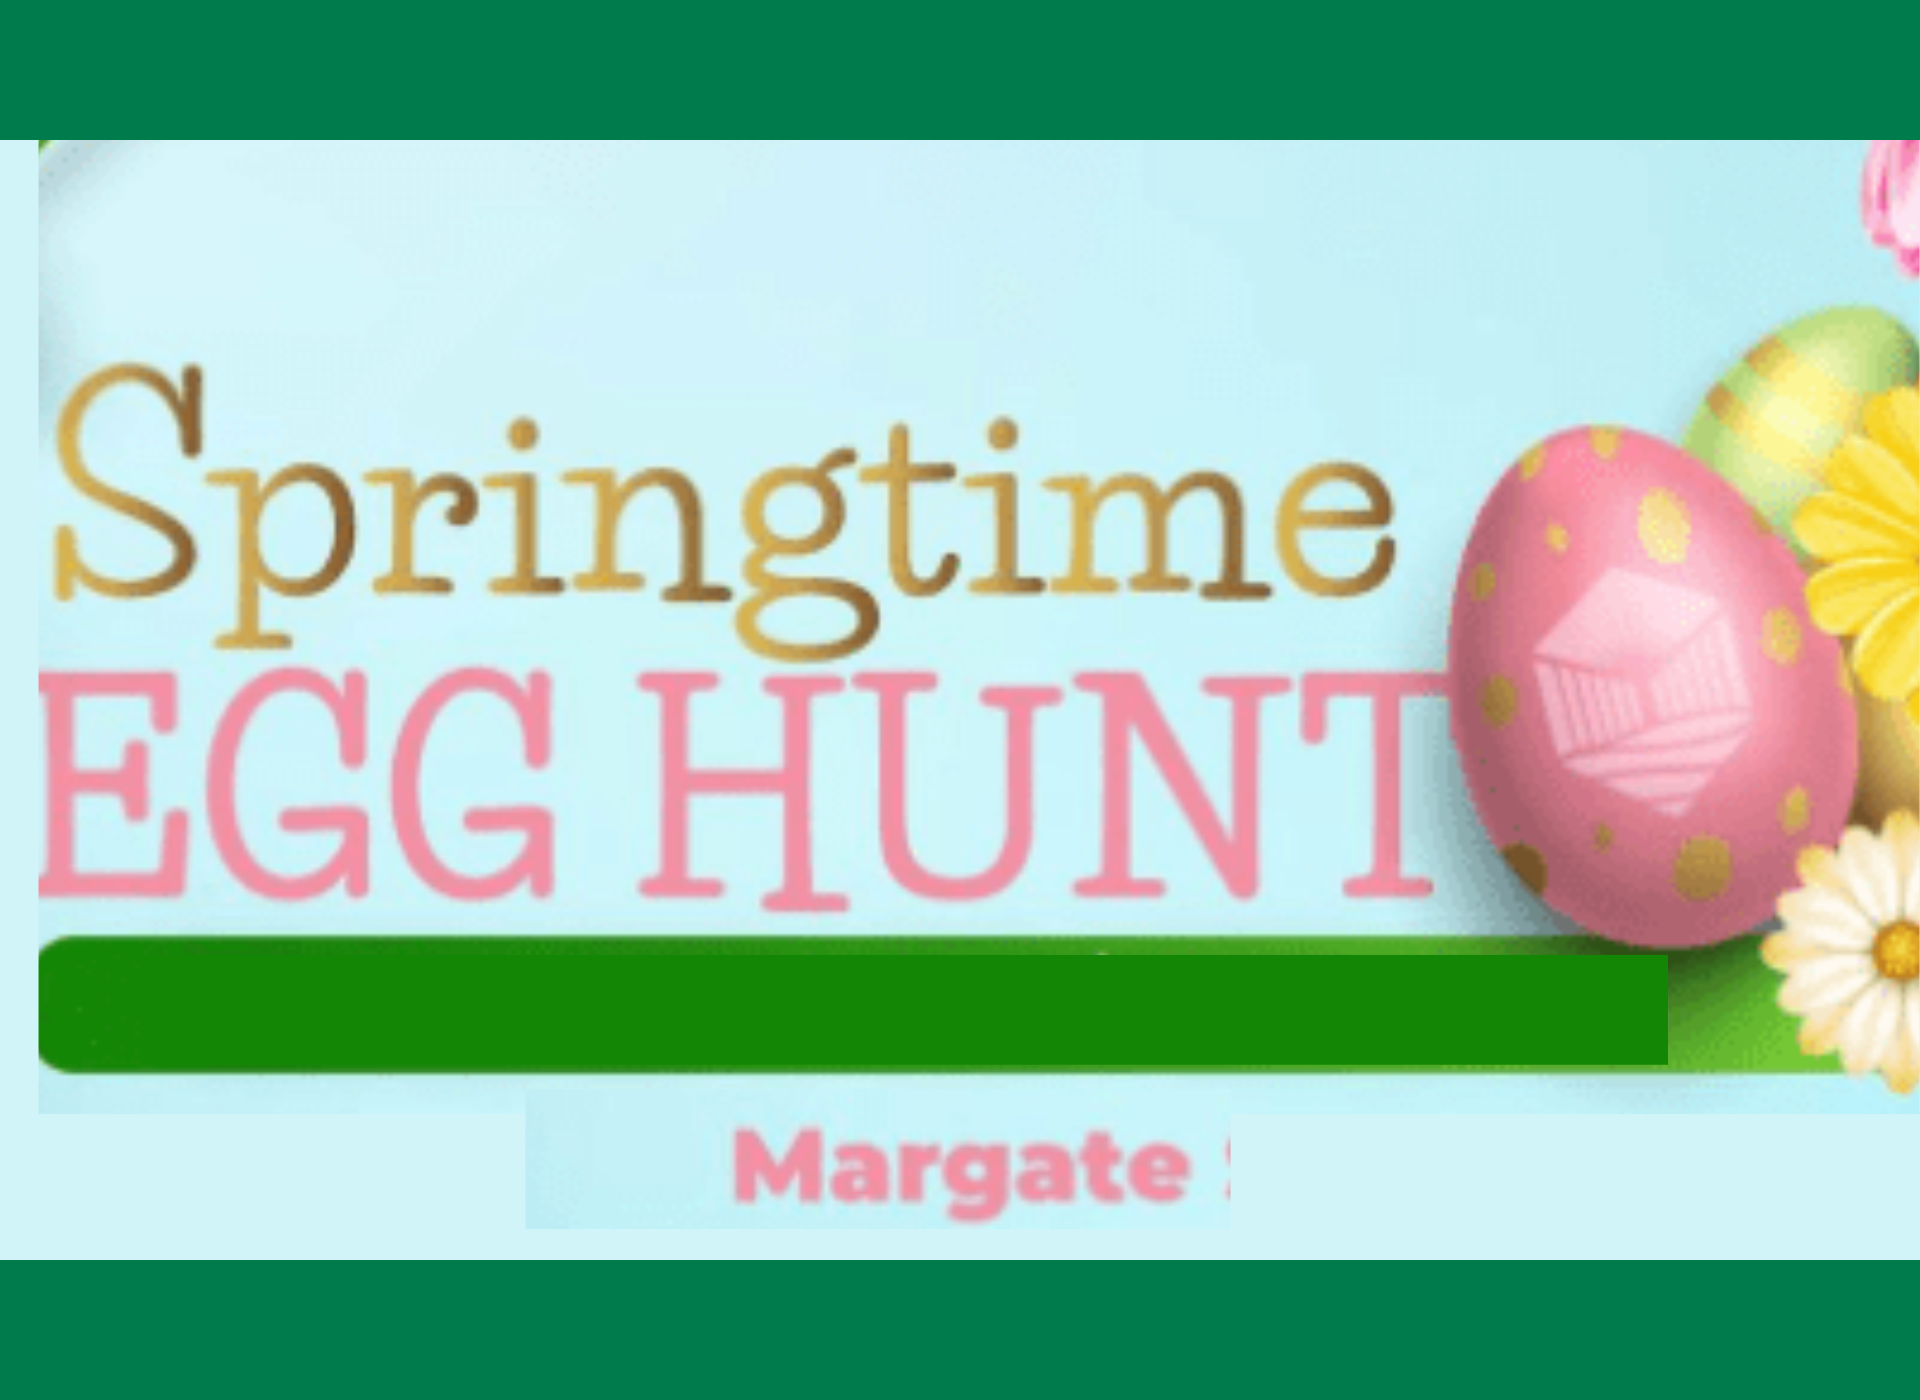 City of Margate -Egg Hunt